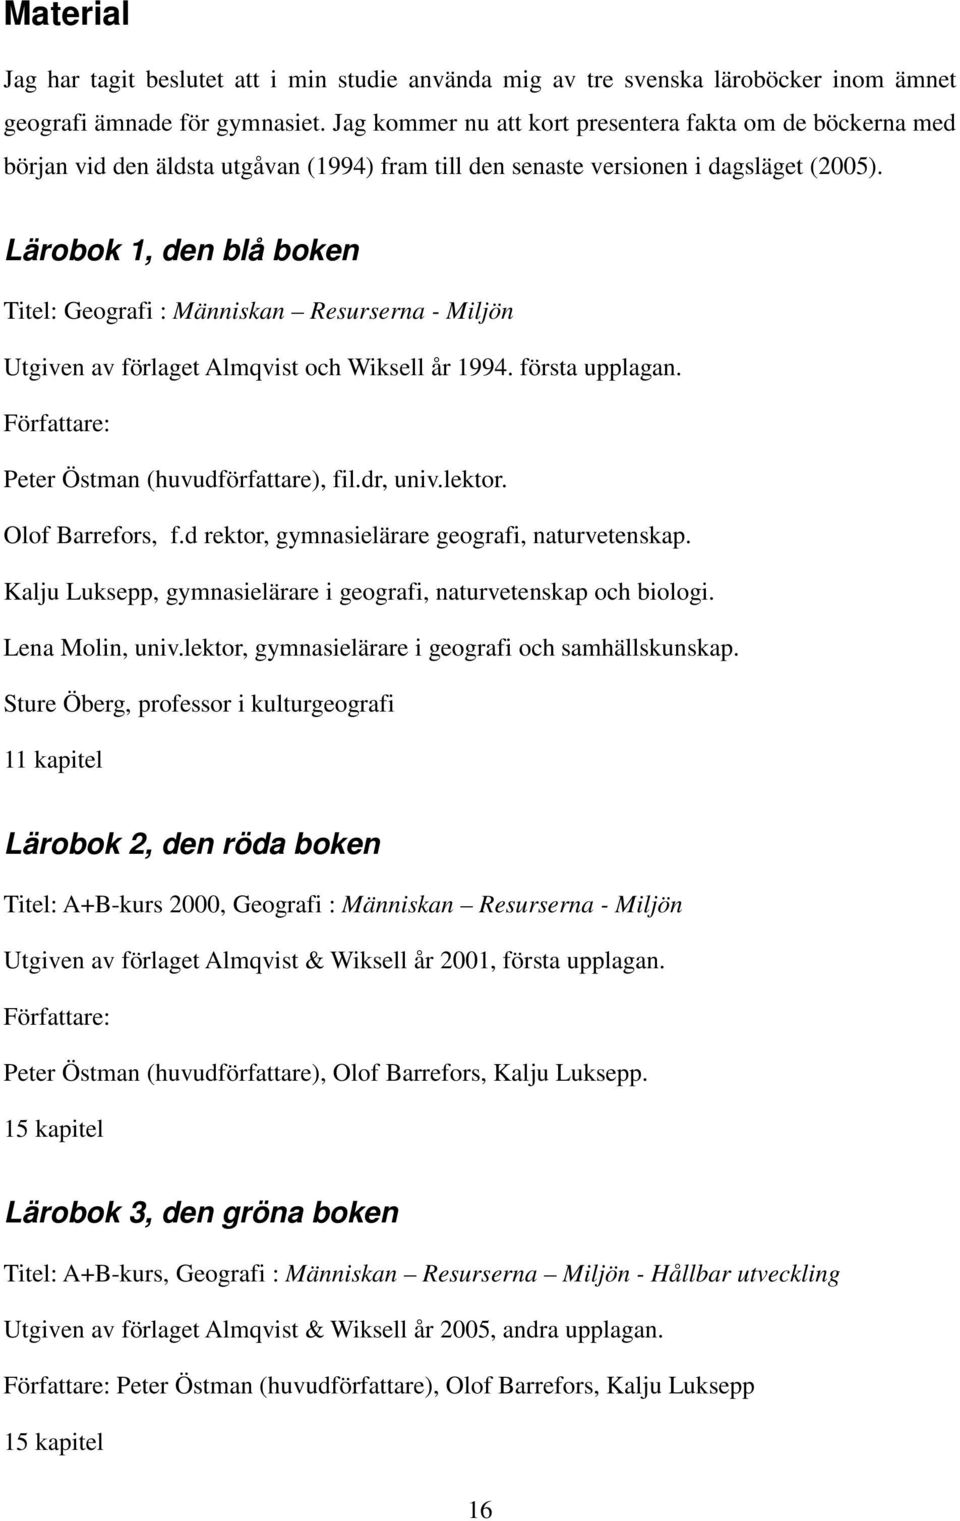 Lärobok 1, den blå boken Titel: Geografi : Människan Resurserna - Miljön Utgiven av förlaget Almqvist och Wiksell år 1994. första upplagan. Författare: Peter Östman (huvudförfattare), fil.dr, univ.